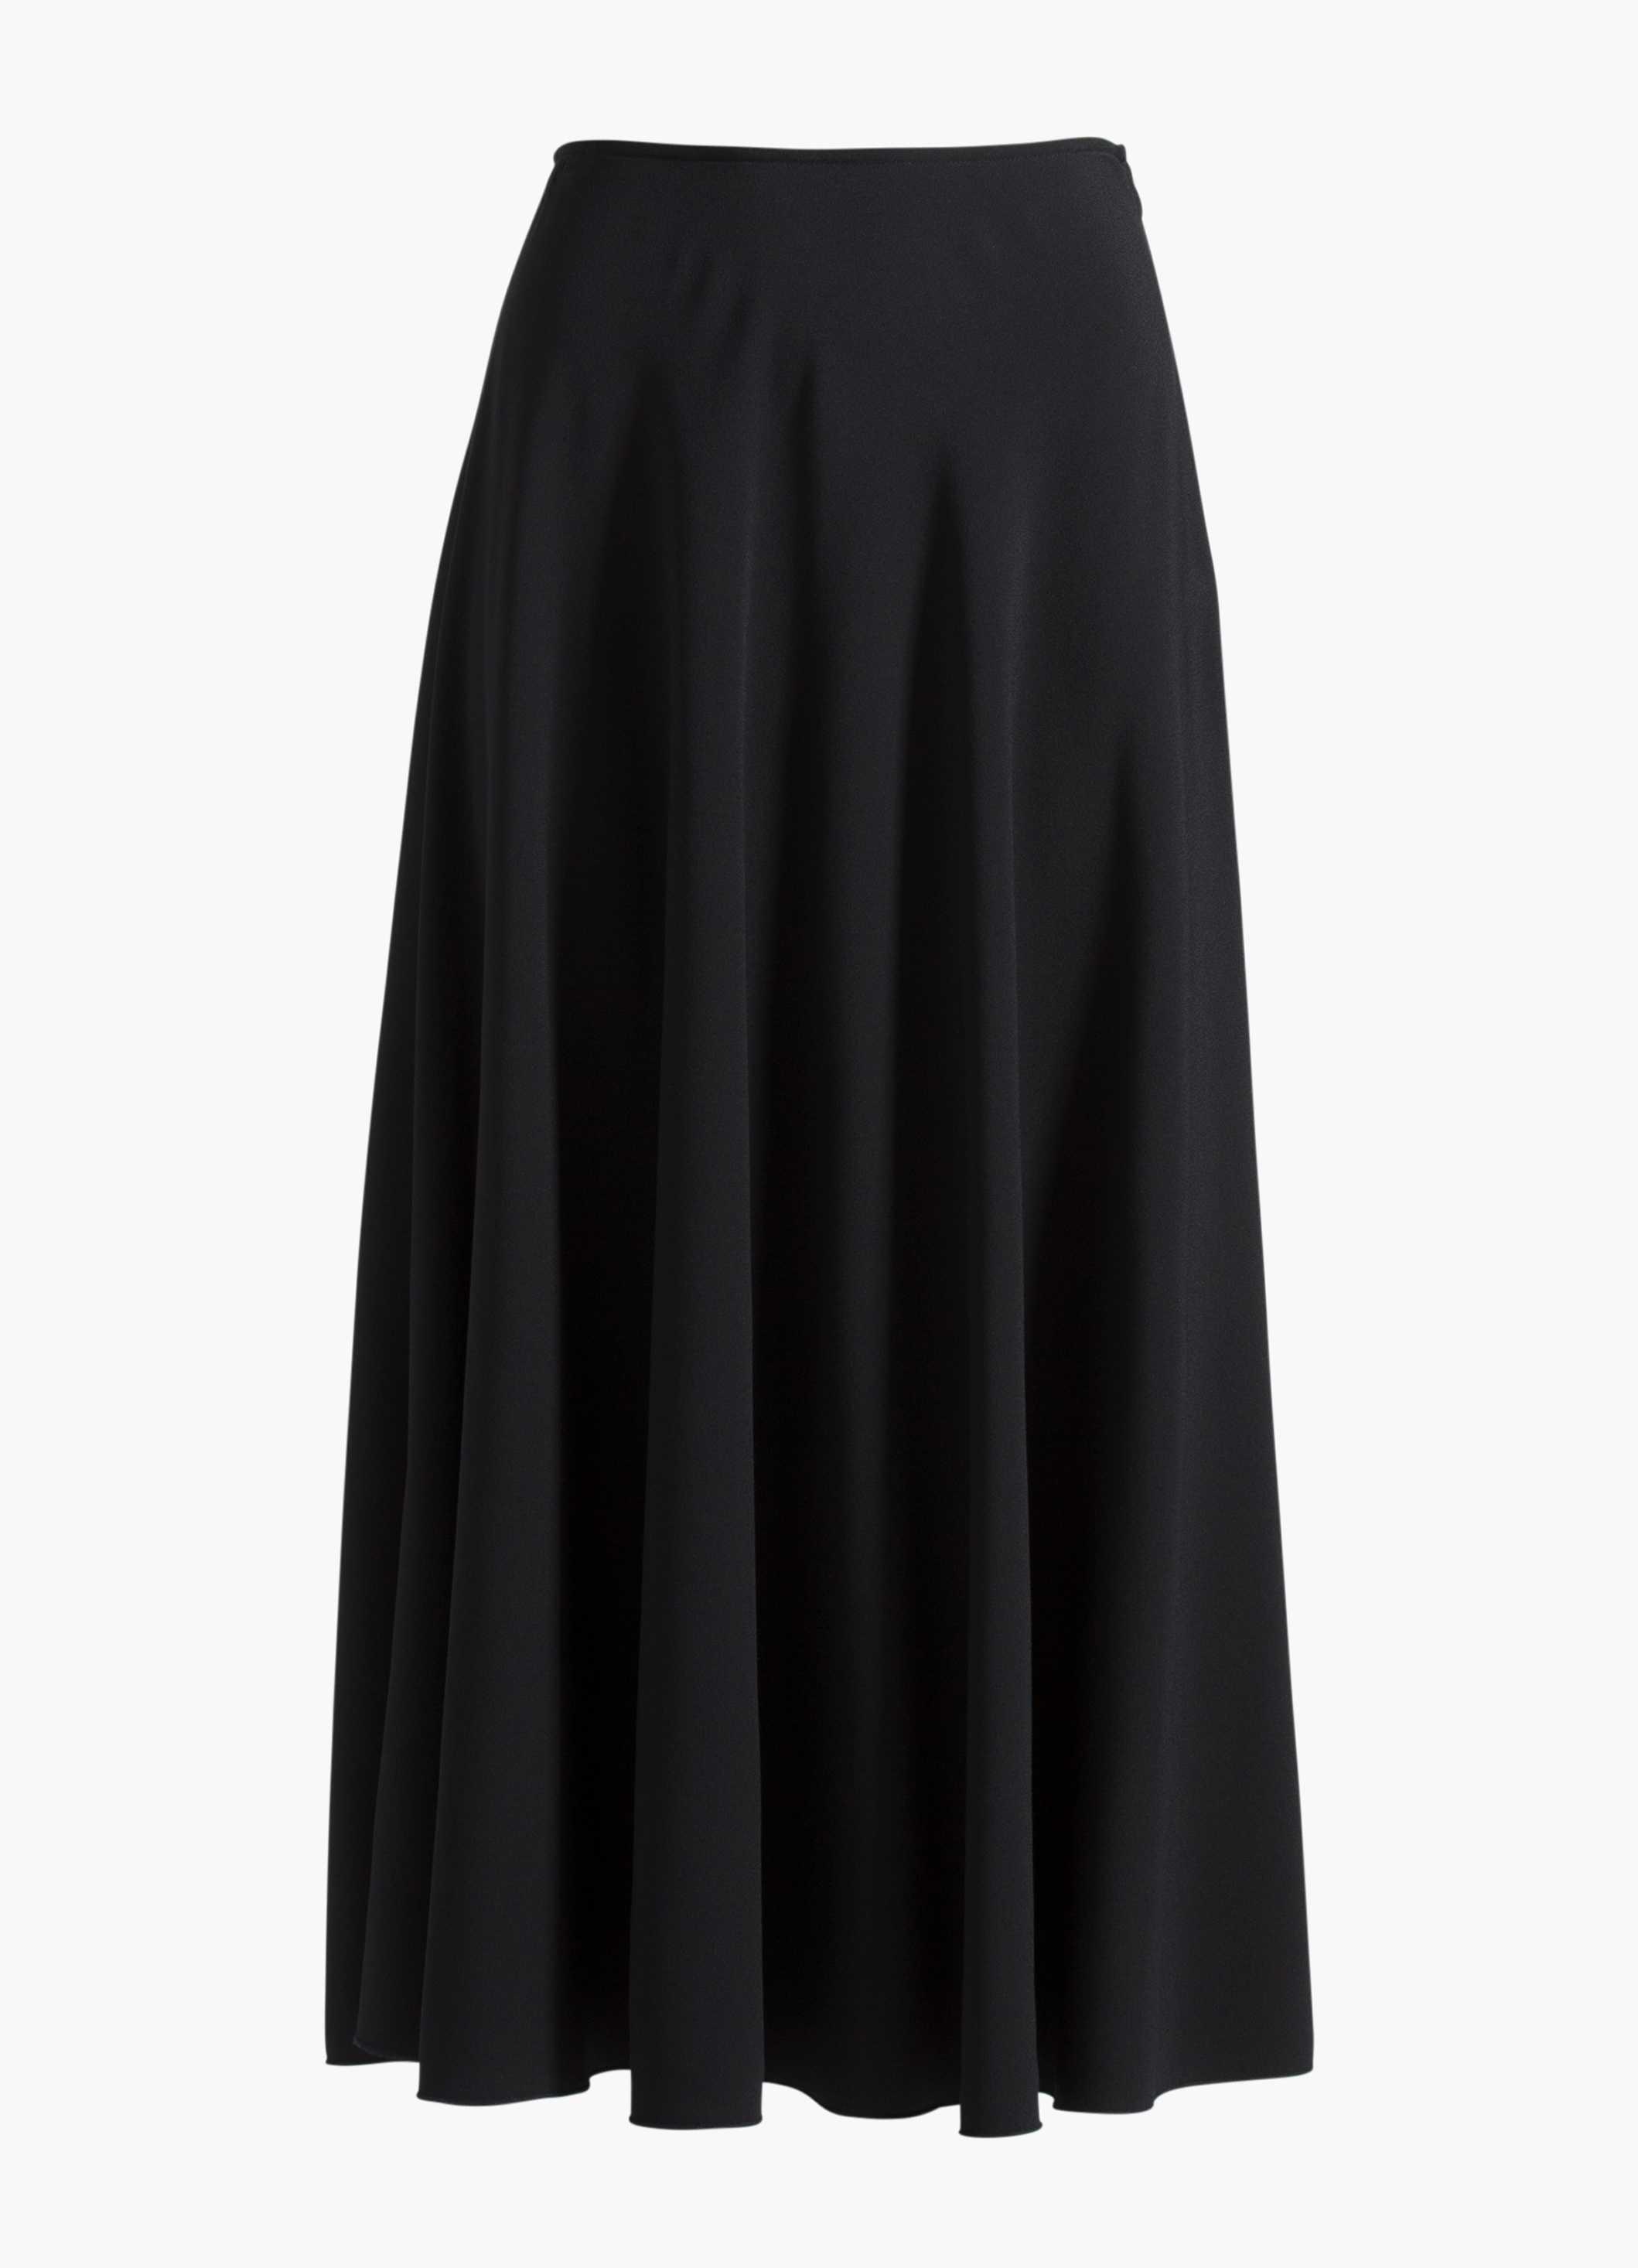 St. John Satin Back Crepe Skirt in Black - Lyst